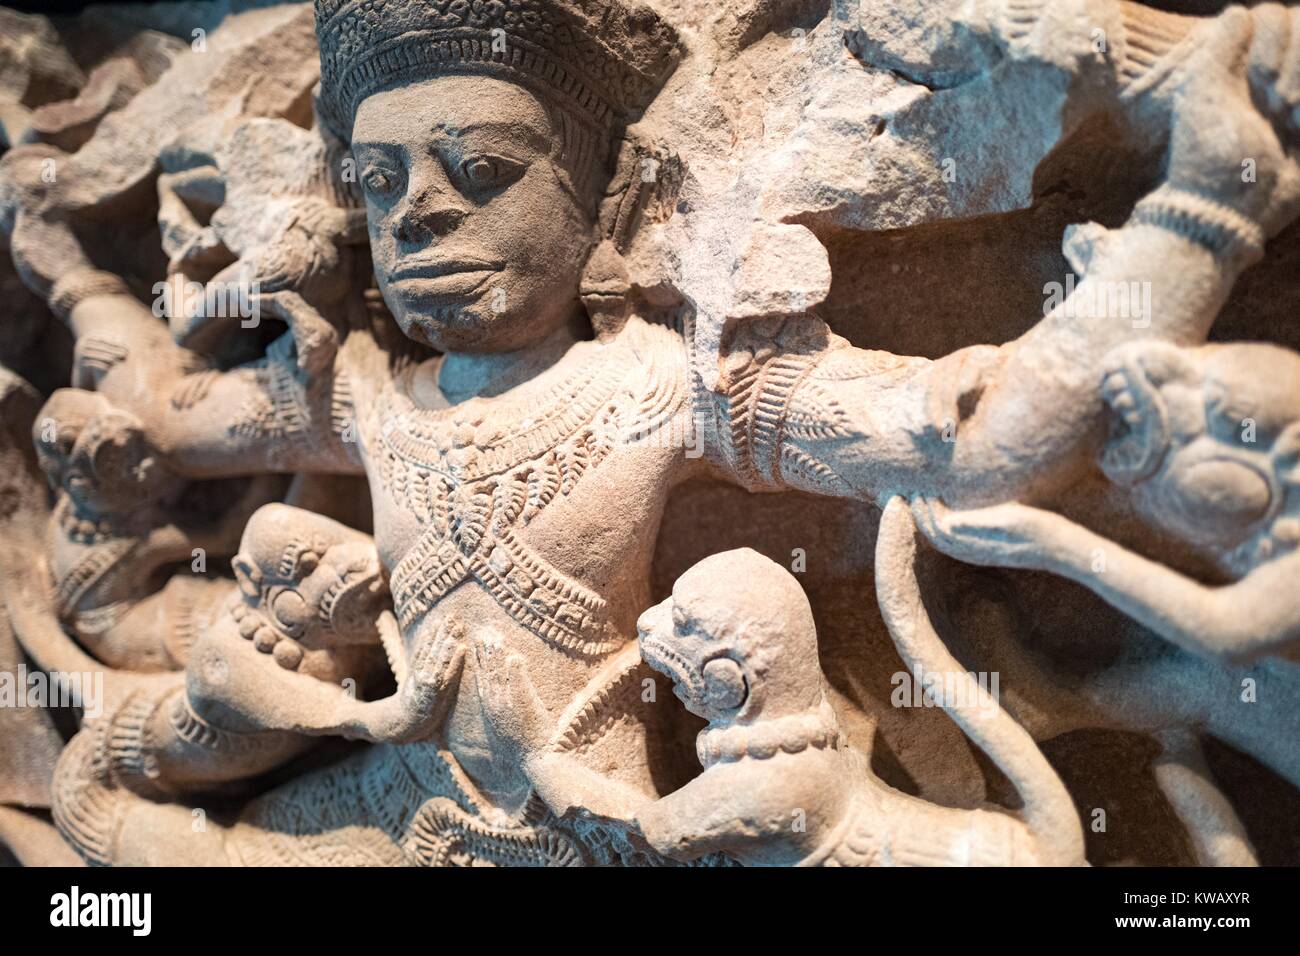 Vue détaillée du travail en pierre sculptée Kumbhakarna batailles la singes, montrant une scène de l'épique Ramayana dans lequel Kumbhakarna bat une armée de singes, le 2 octobre 2016. Banque D'Images